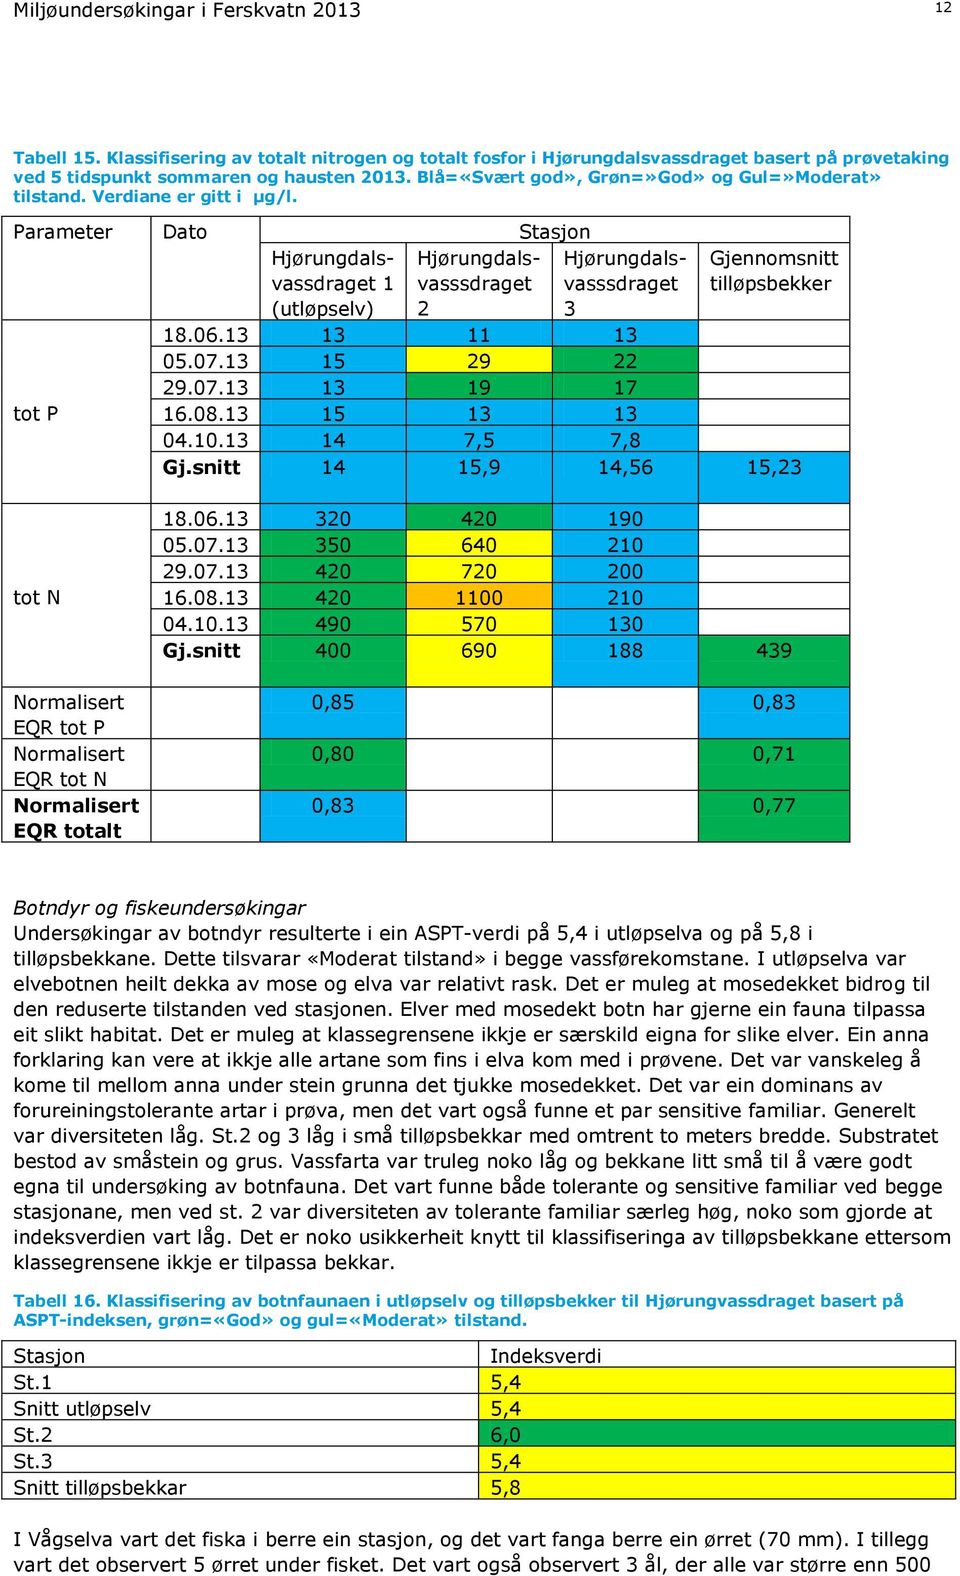 Parameter Dato Stasjon tot P Hjørungdalsvassdraget 1 (utløpselv) Hjørungdalsvasssdraget 2 Hjørungdalsvasssdraget 3 Gjennomsnitt tilløpsbekker 18.06.13 13 11 13 05.07.13 15 29 22 29.07.13 13 19 17 16.